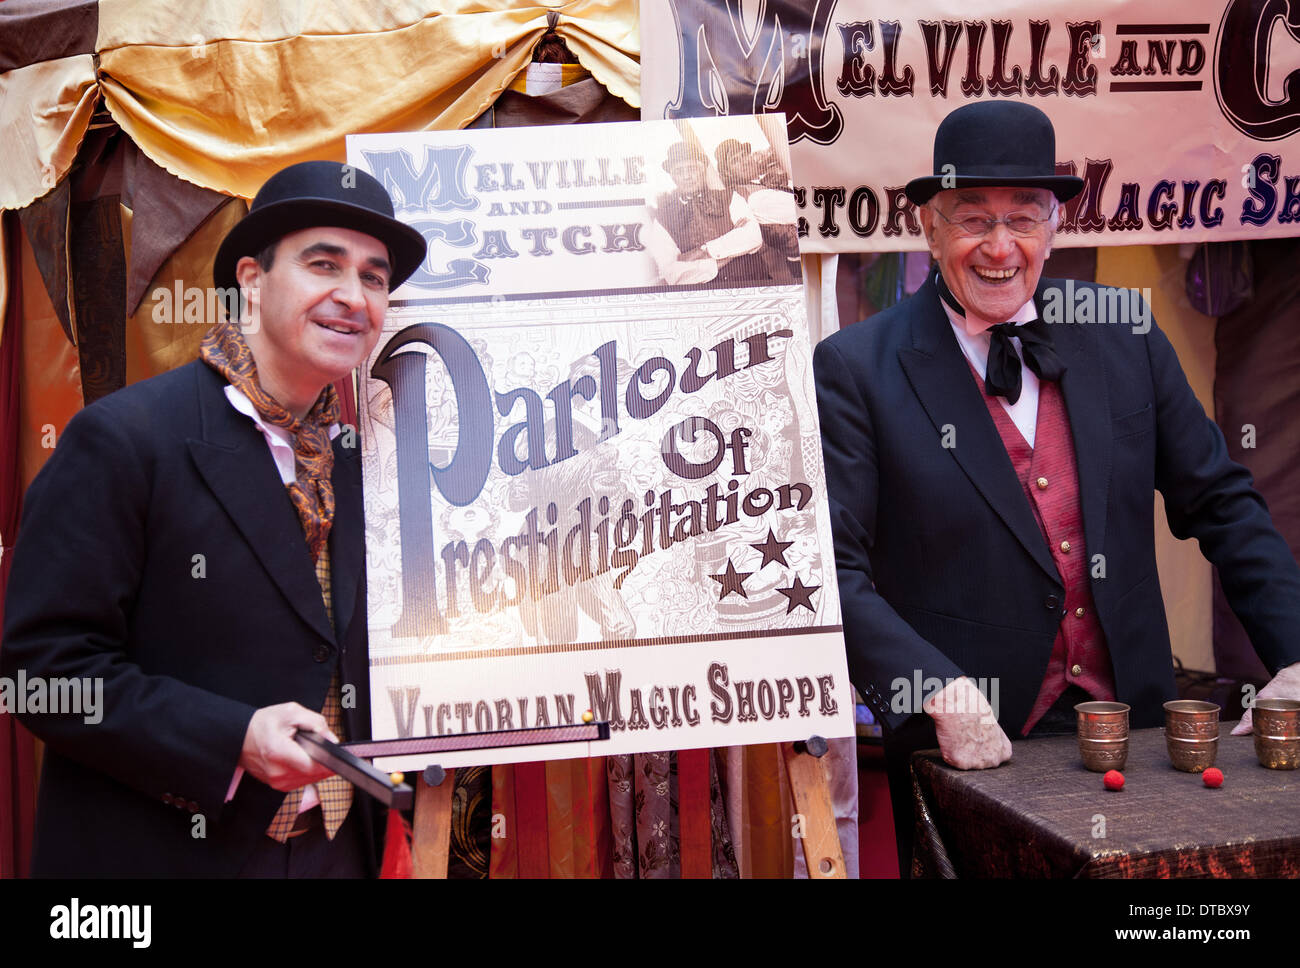 „Salon der Prestige“ viktorianischer Entertainer beim jährlichen Festival von Zirkus, Magie und neuer Vielfalt in Blackpool. Auf dem zehntägigen Festival der Magie, dem Showzam, werden die berühmten Wahrzeichen von Blackpool von Seiltännern, Zauberern und Straßenkünstlern überrannt. Das Festival findet jedes Jahr in Blackpool statt, einem außergewöhnlichen und einzigartigen Festival, das eine Reihe hochkarätiger Künstler, Straßenkünstler, Zirkus, Magie und neue Vielfalt umfasst und noch nie zuvor in der Stadt ausgestellte Acts umfasst. Stockfoto